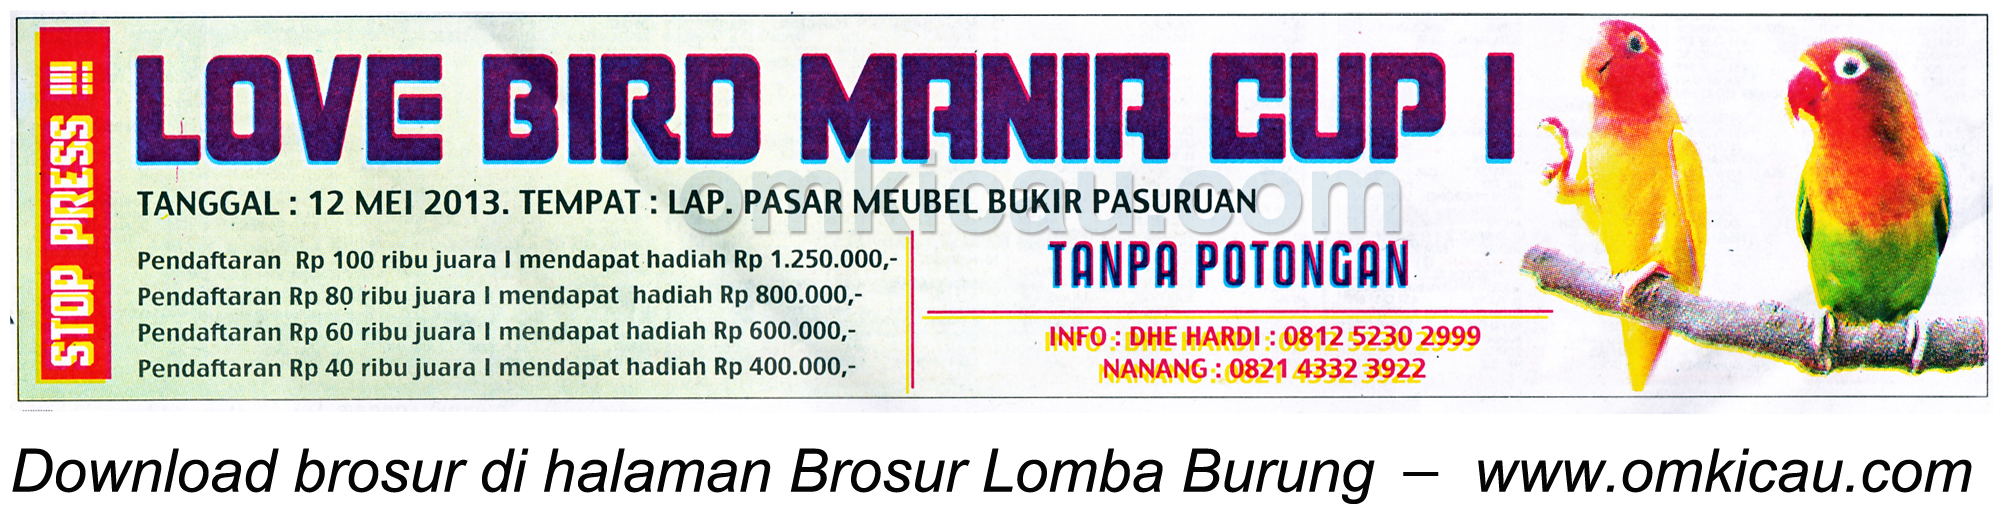 Brosur Lomba Lovebird Mania Cup I, Pasuruan, 12 Mei 2013